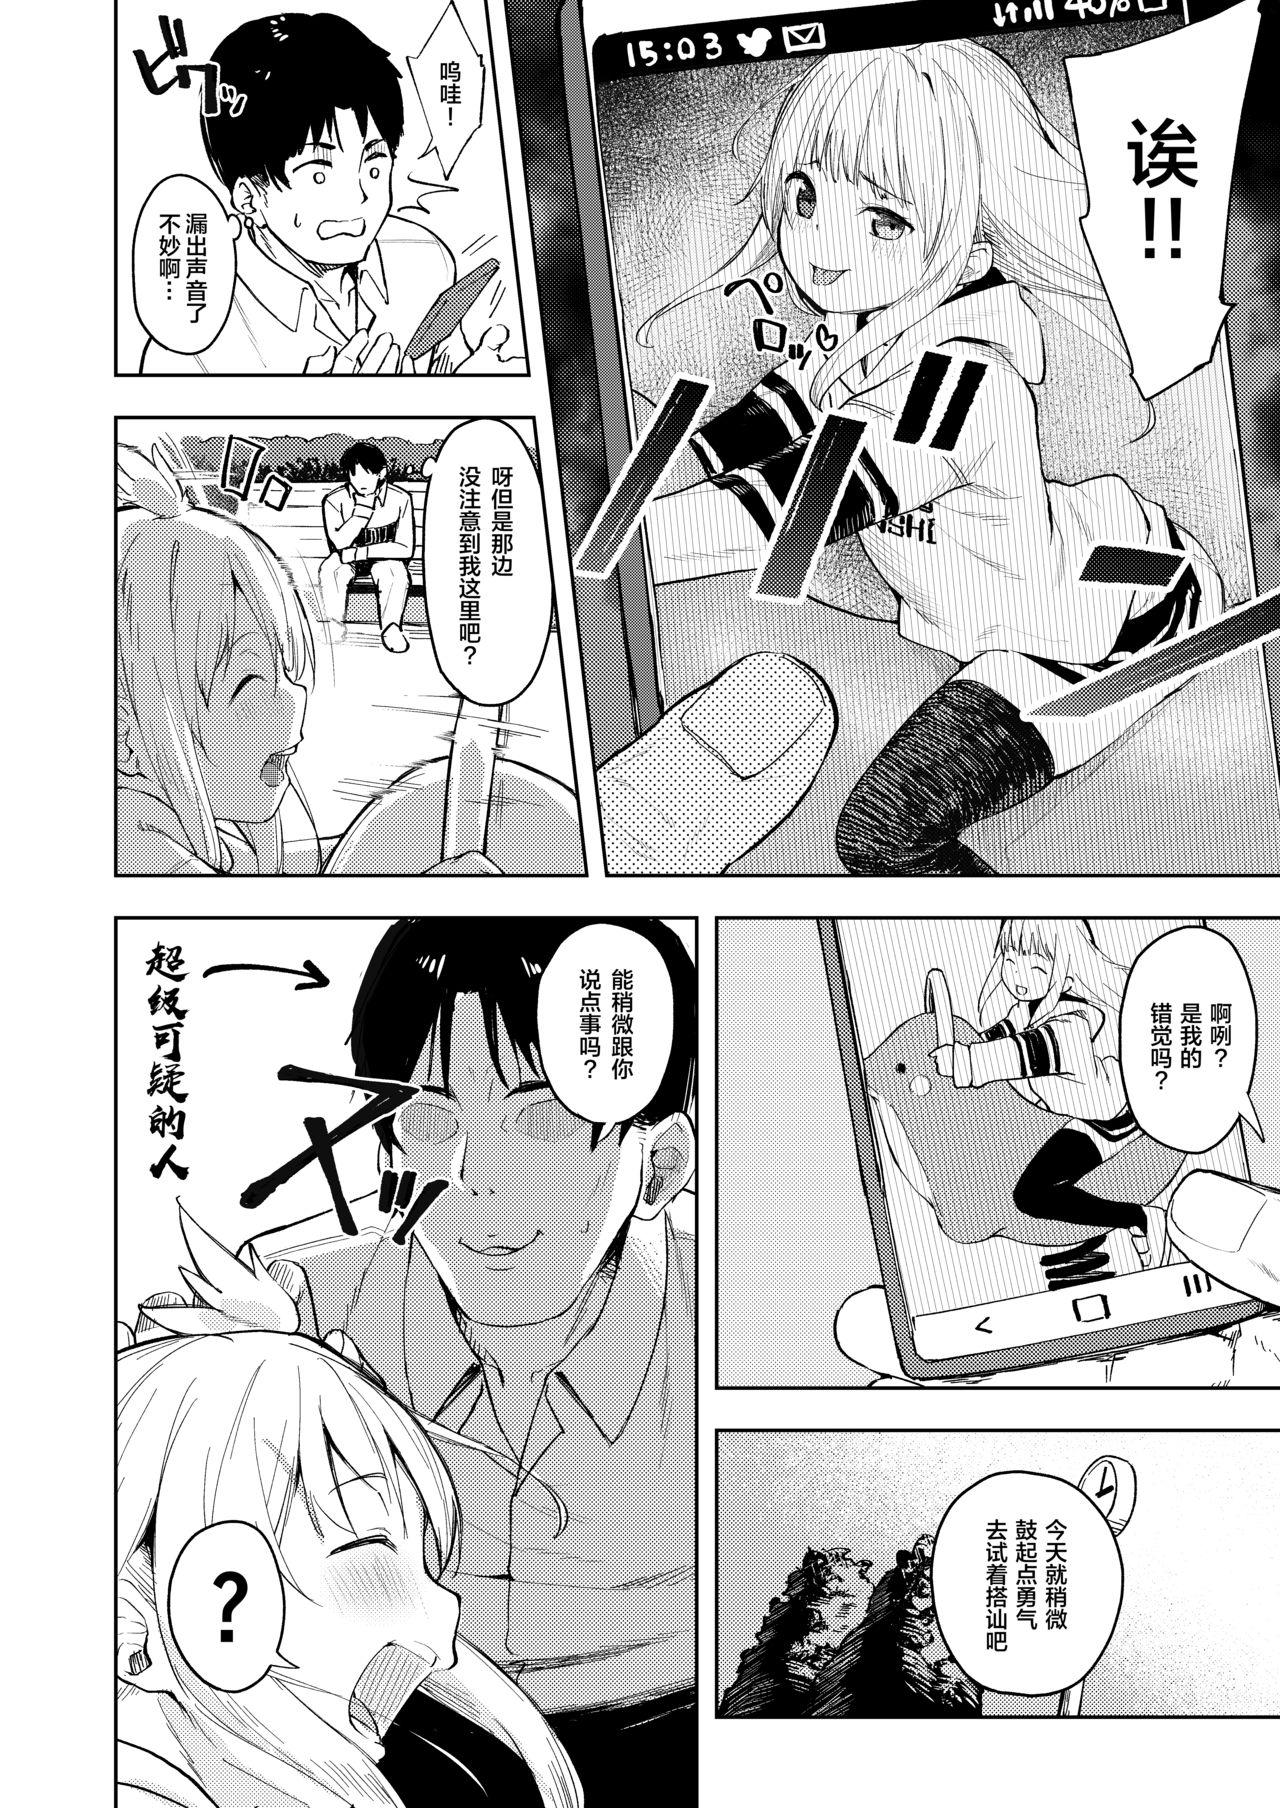 Que Chouhatsu Matenshi!! Tenma-chan - Original 8teen - Page 4